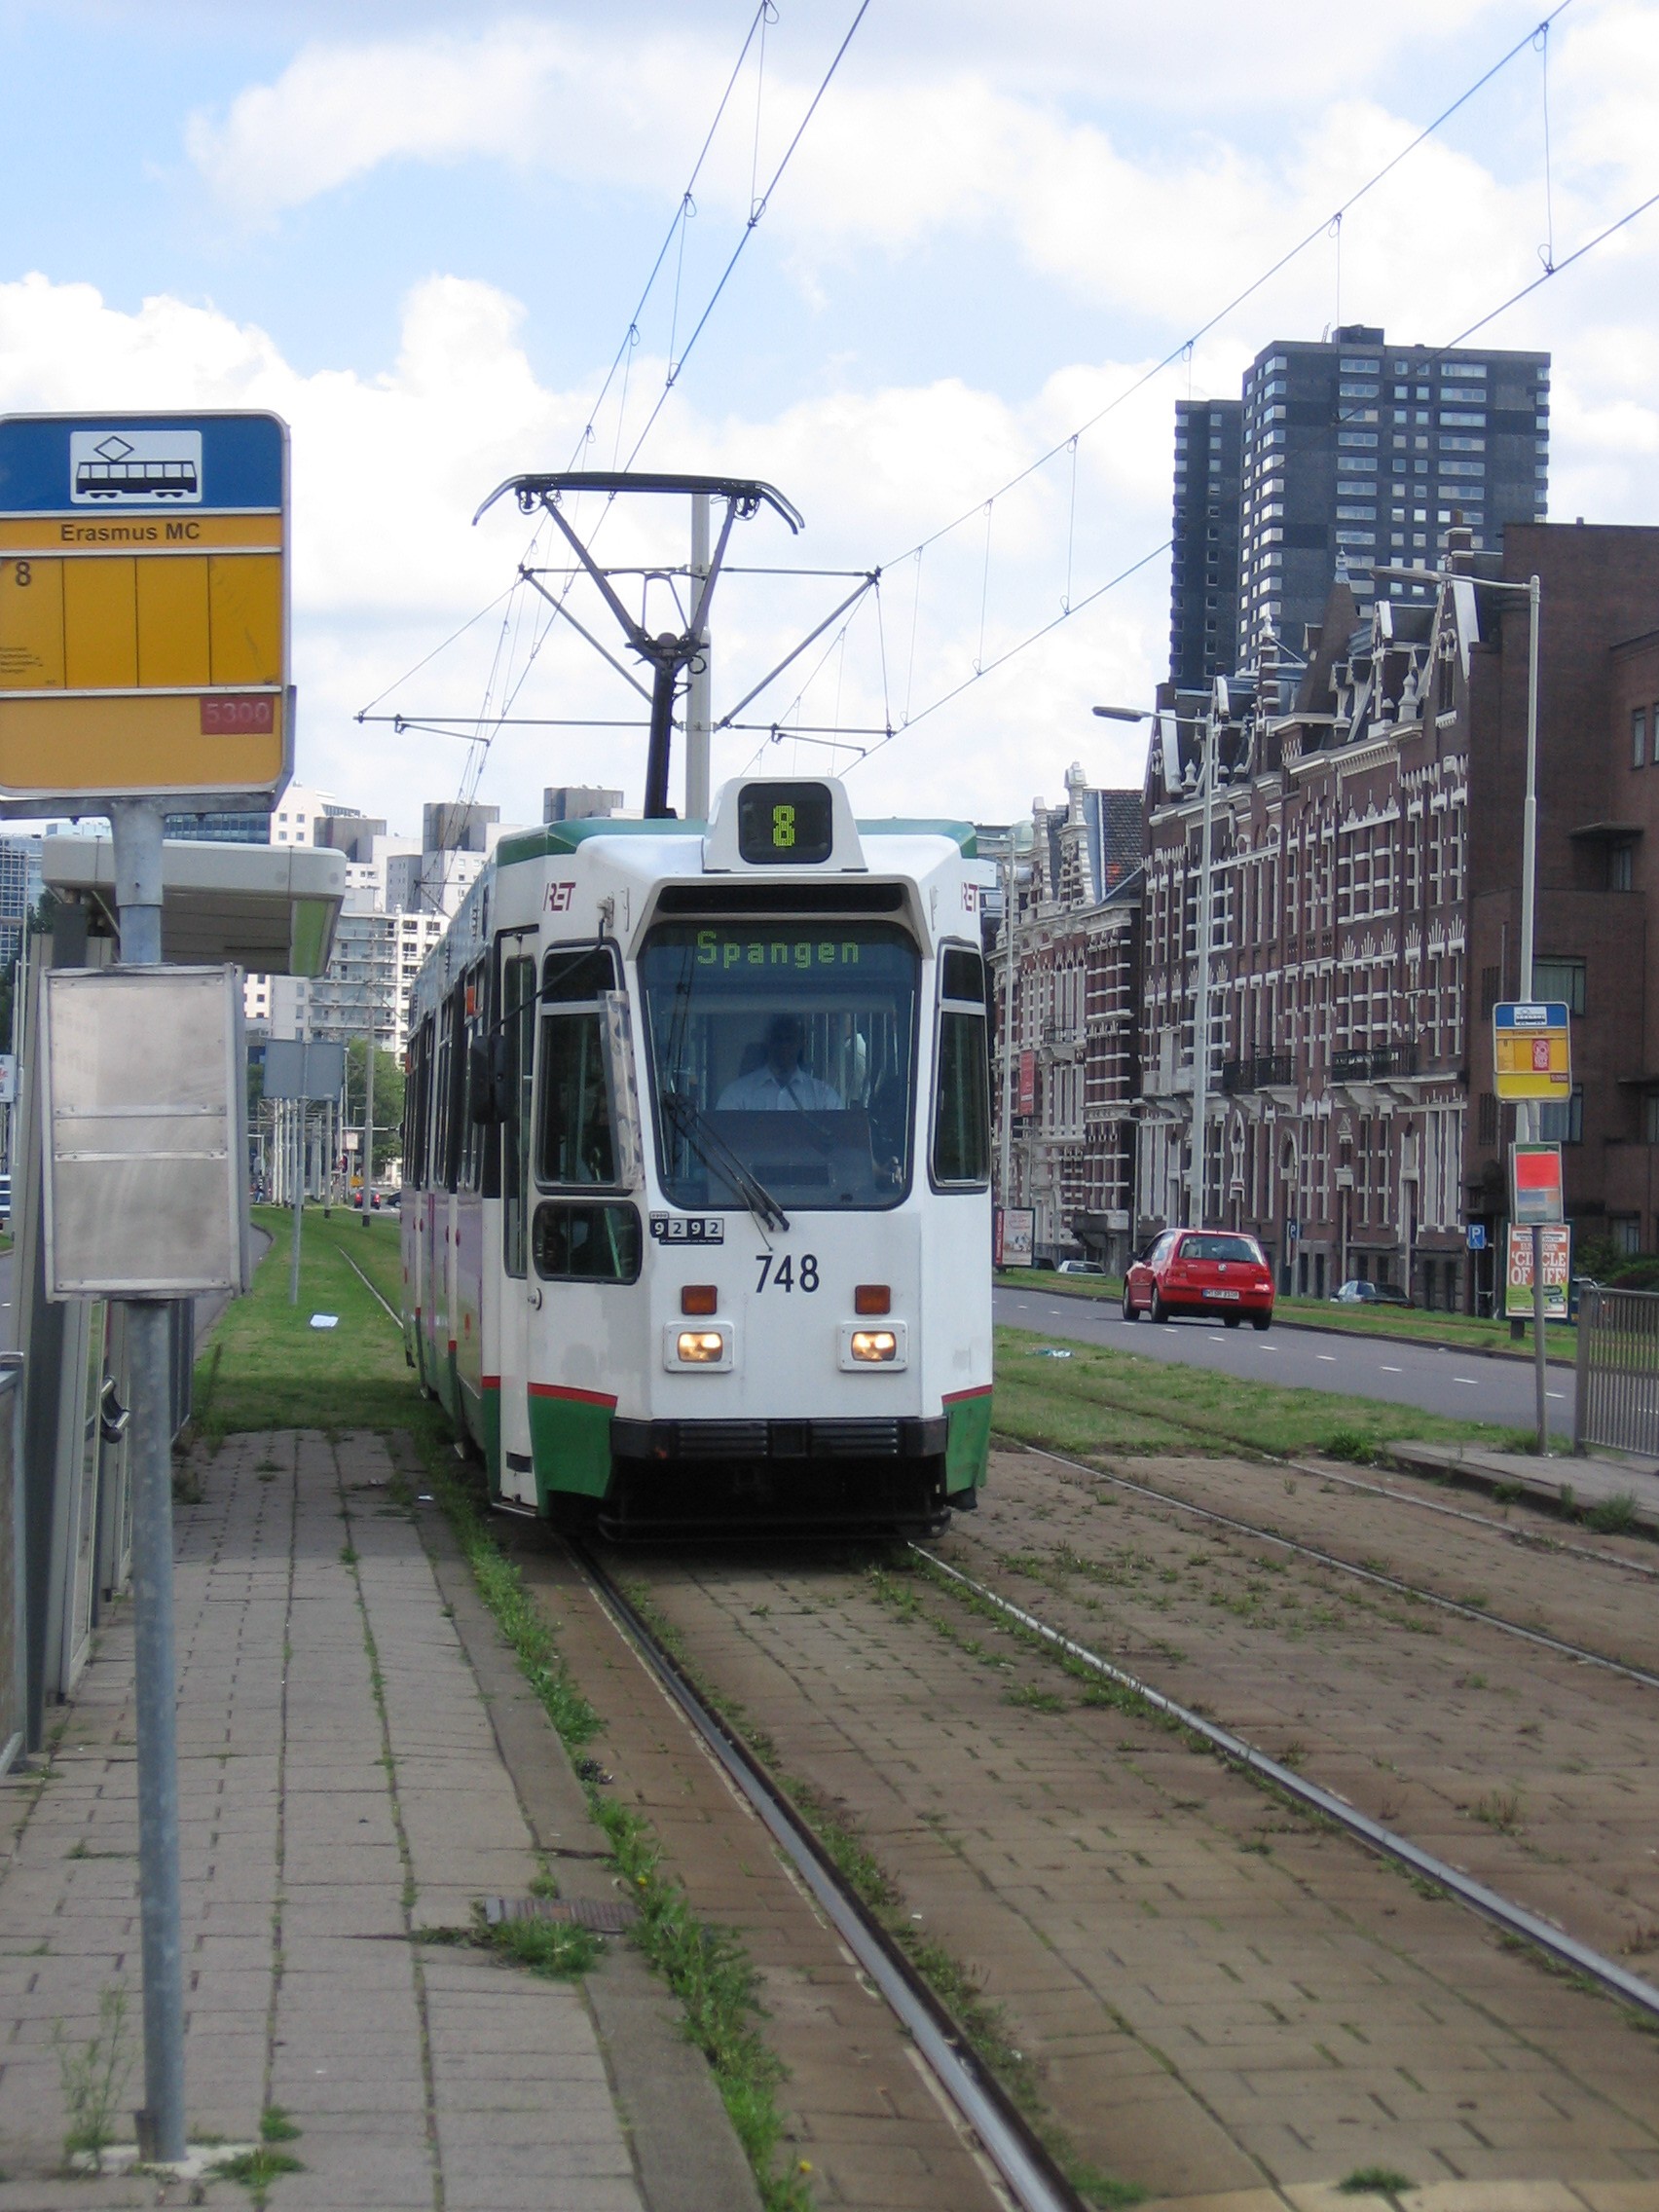 Belang hetzelfde Het is goedkoop Tramlijn 8 (Rotterdam) - Wikipedia